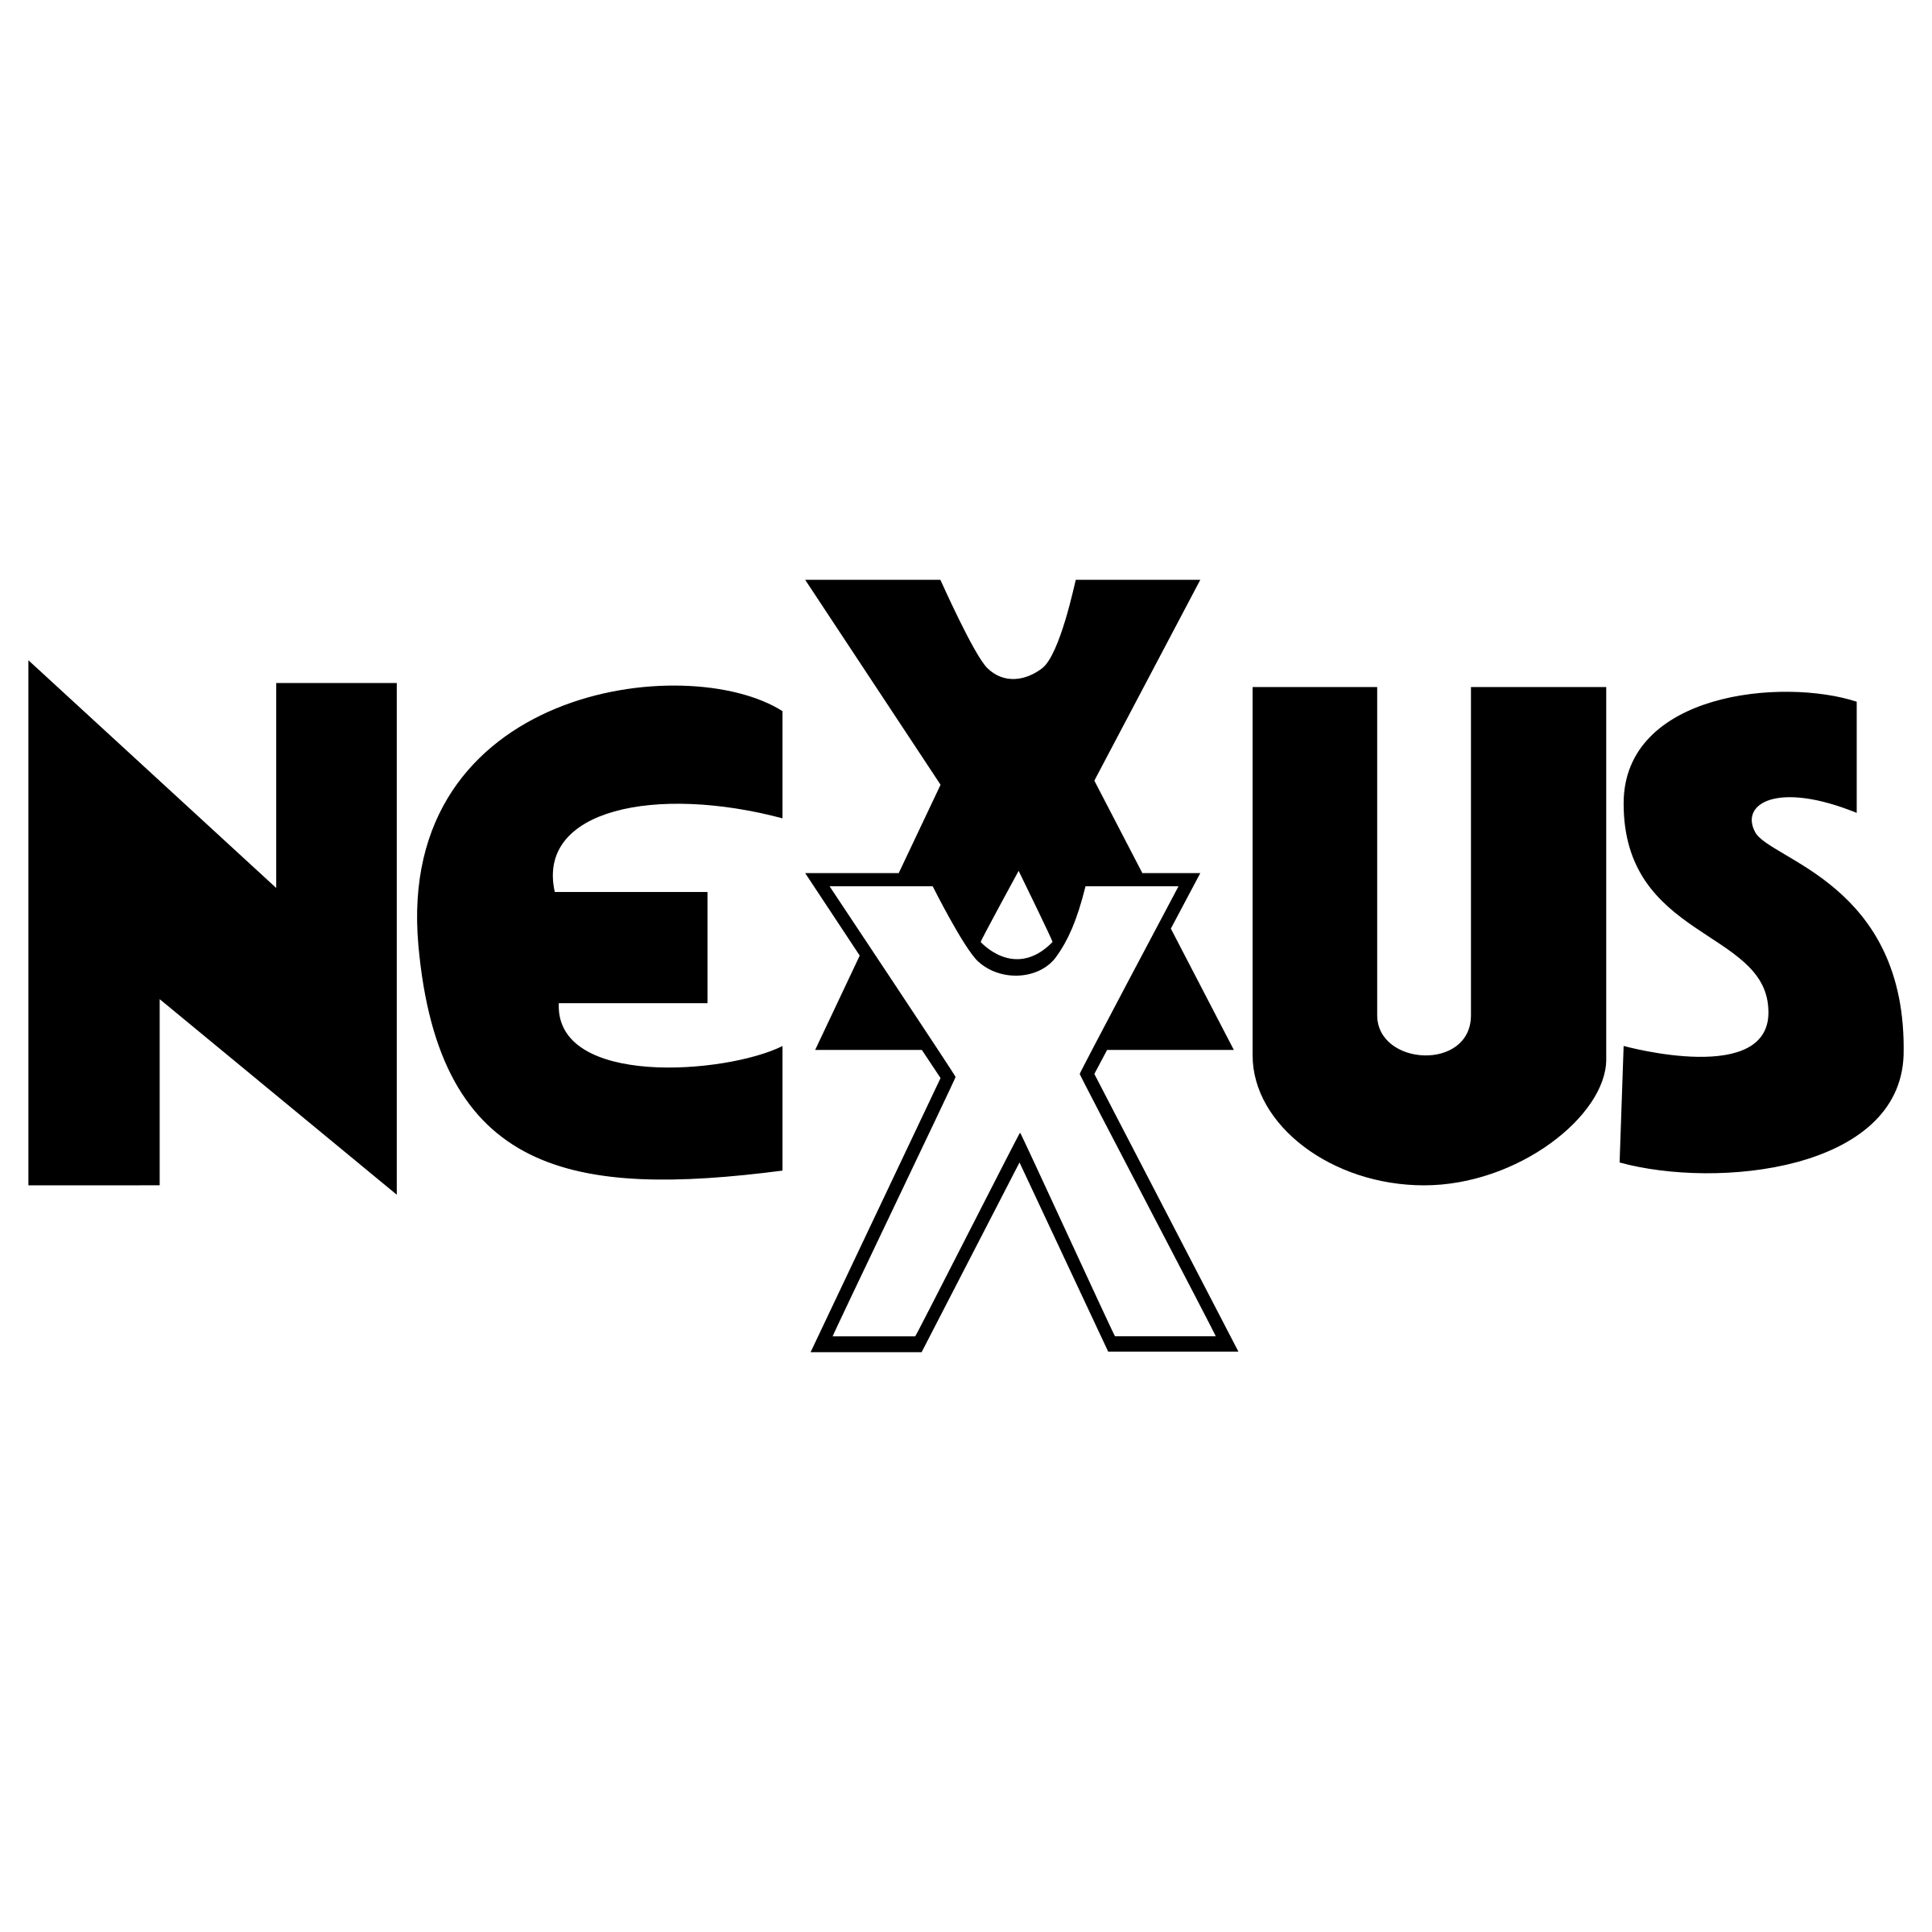 Nexxus Logo - Nexxus Logo PNG Transparent & SVG Vector - Freebie Supply